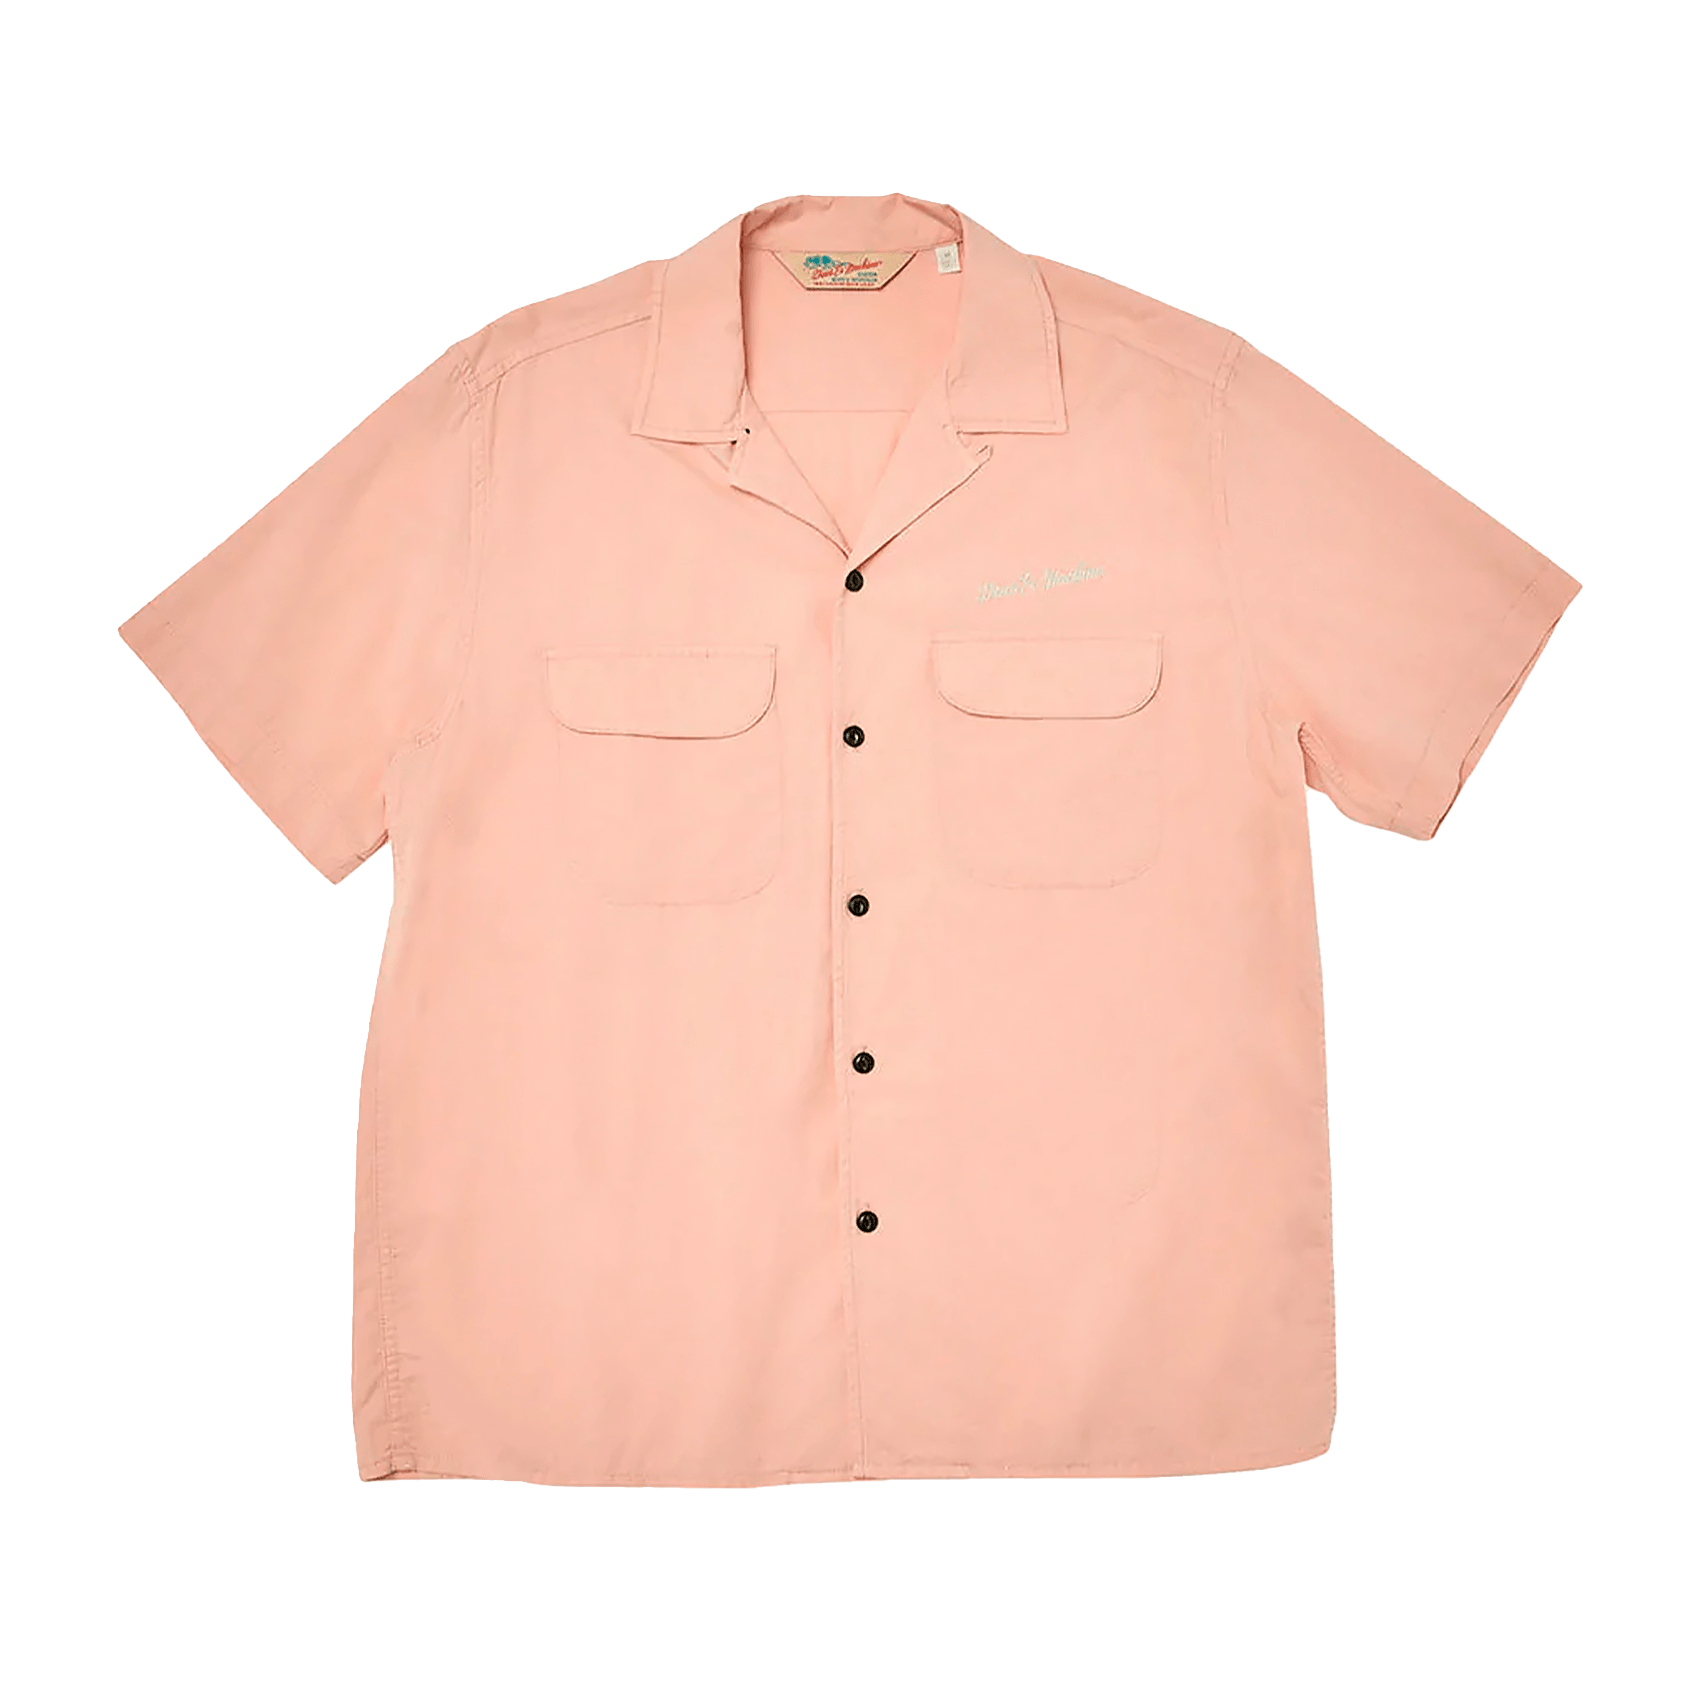 Kingpin Gd Shirt - Coral Pink.